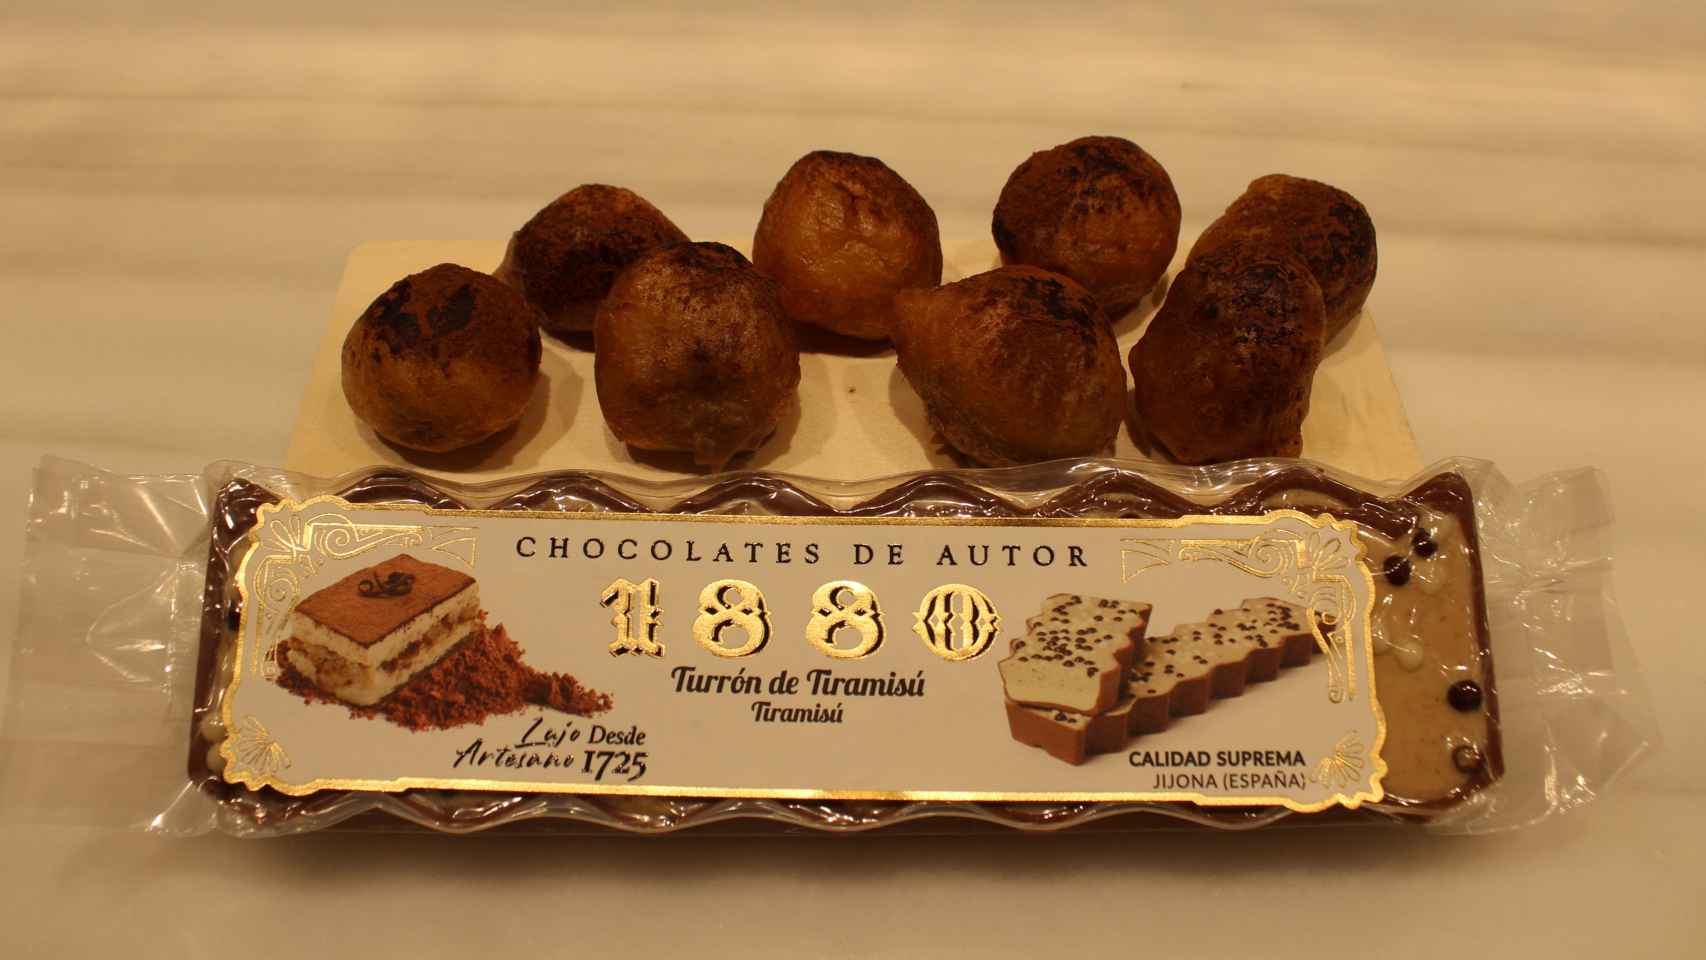 El turrón de Tiramisú, acompañado de los buñuelos basados en el dulce de 1880.